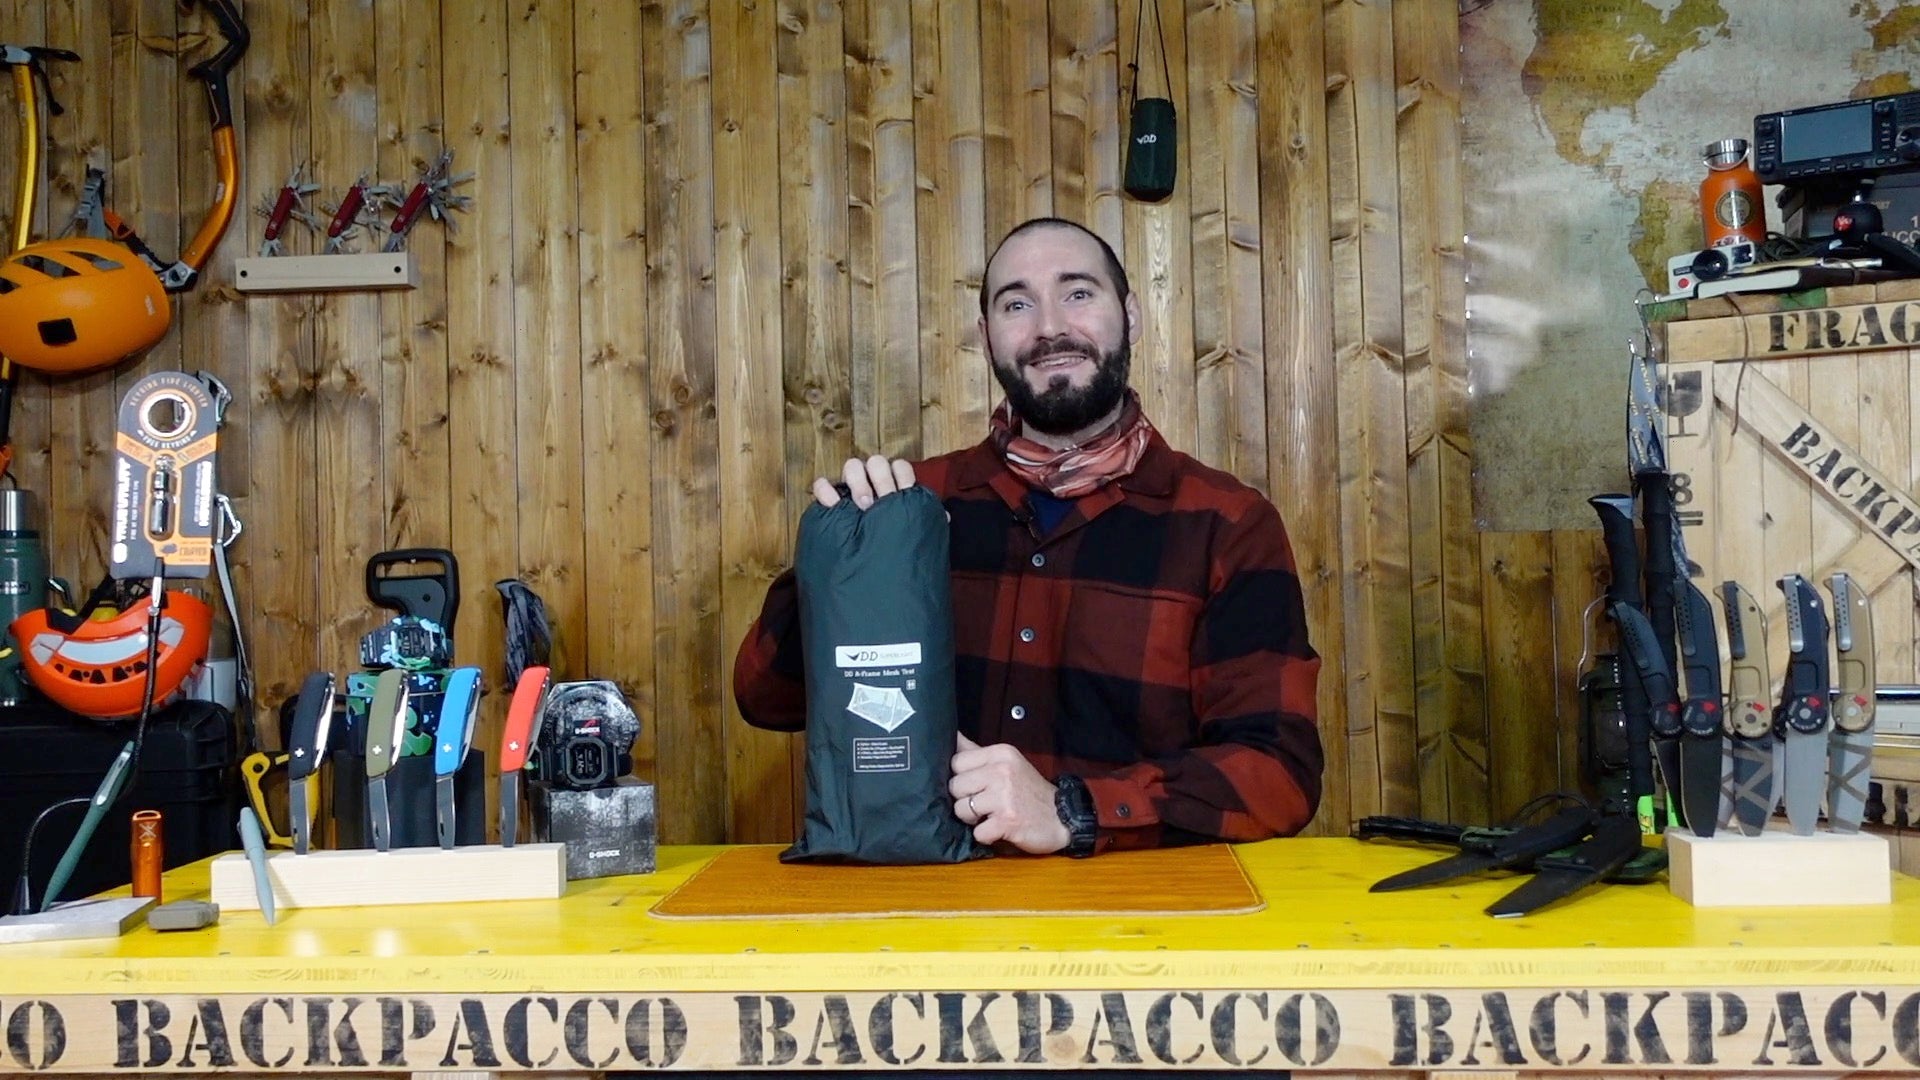 Paolo di Backpacco spiega la tenda a frame di dd e altri prodotti